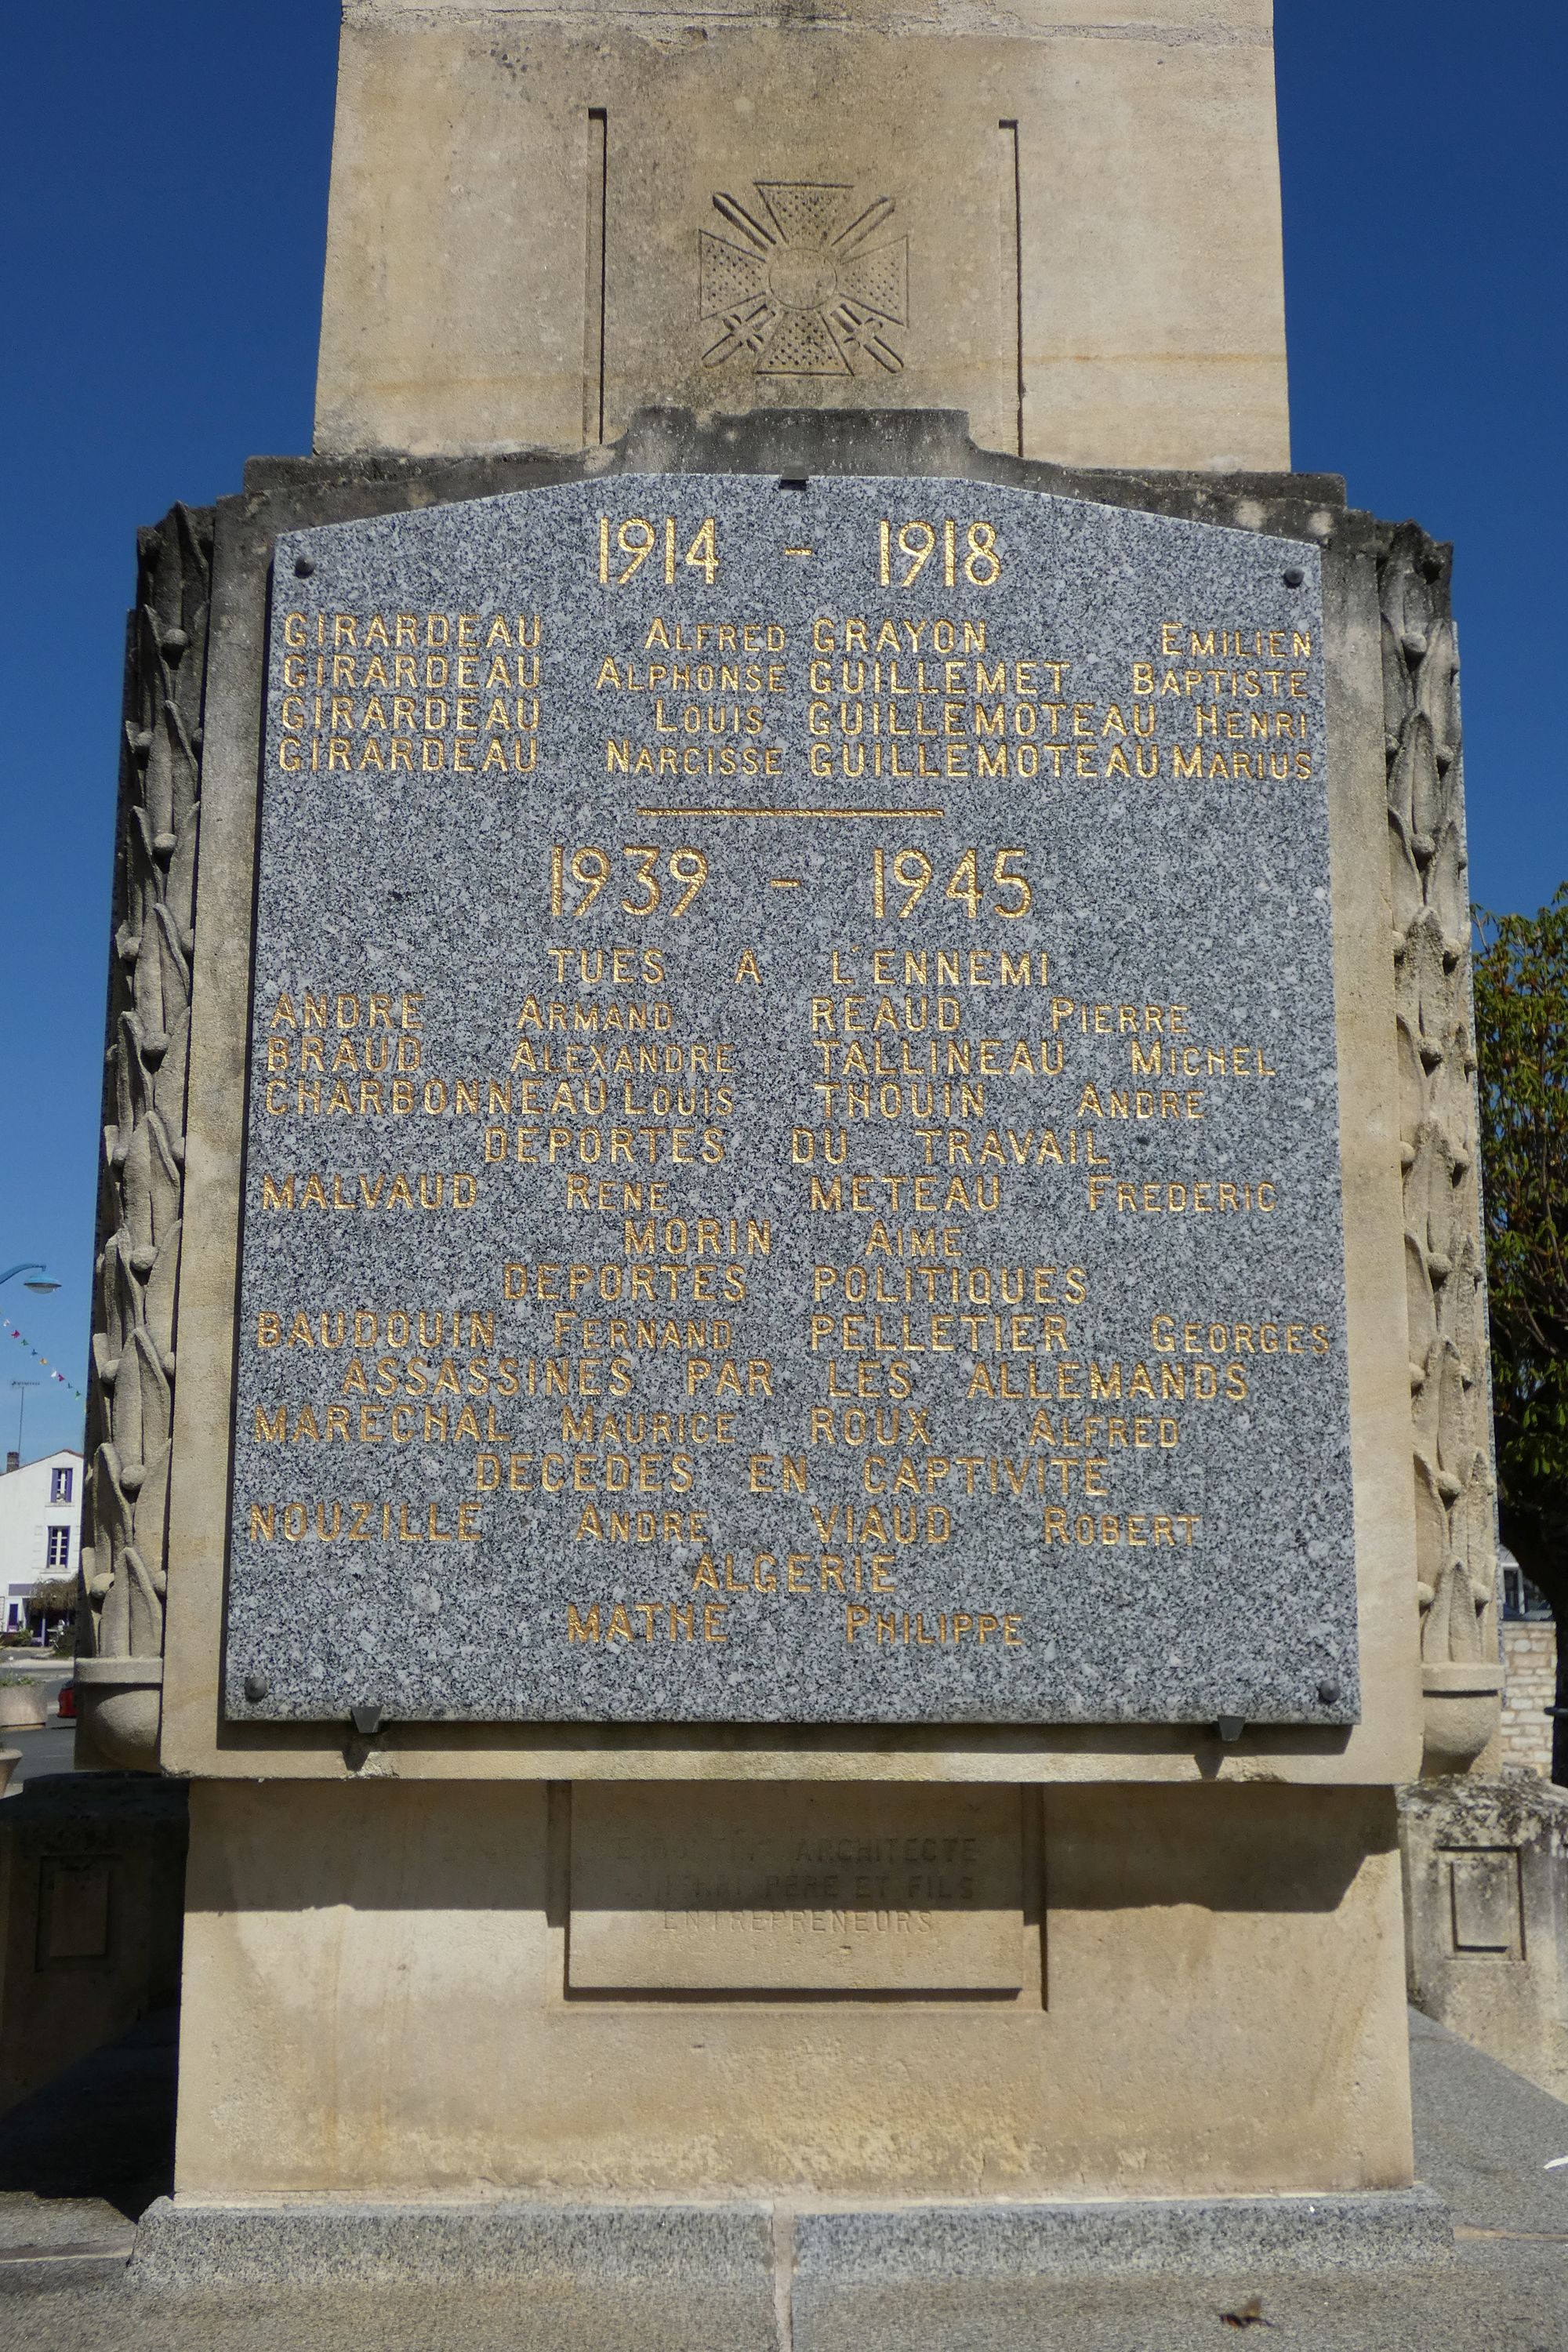 Monument aux morts de Benet